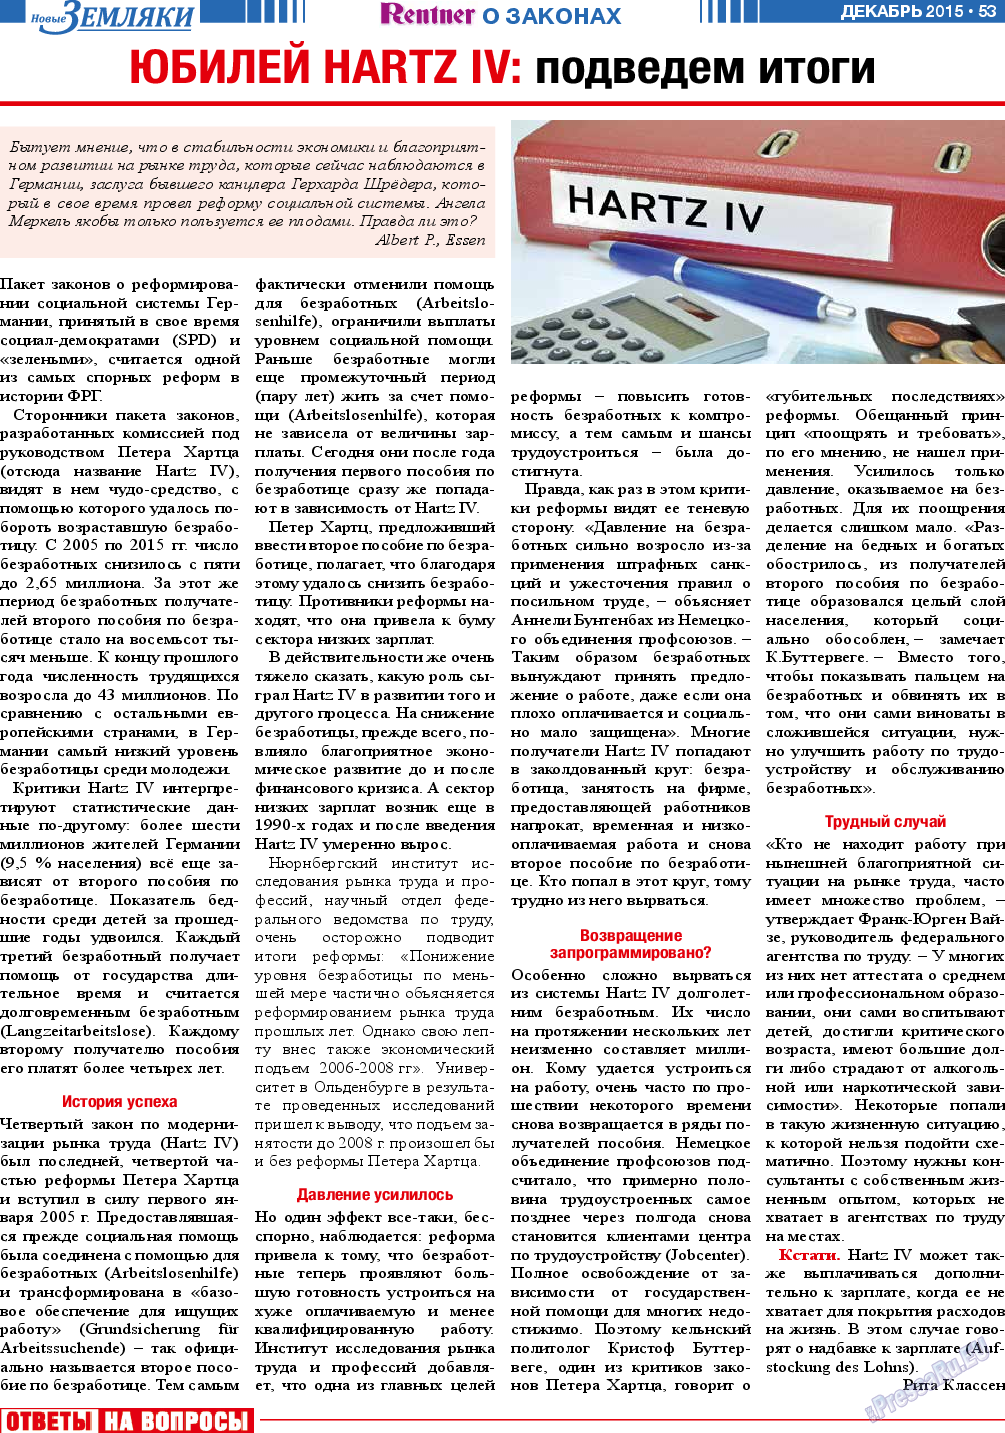 Новые Земляки, газета. 2015 №12 стр.53